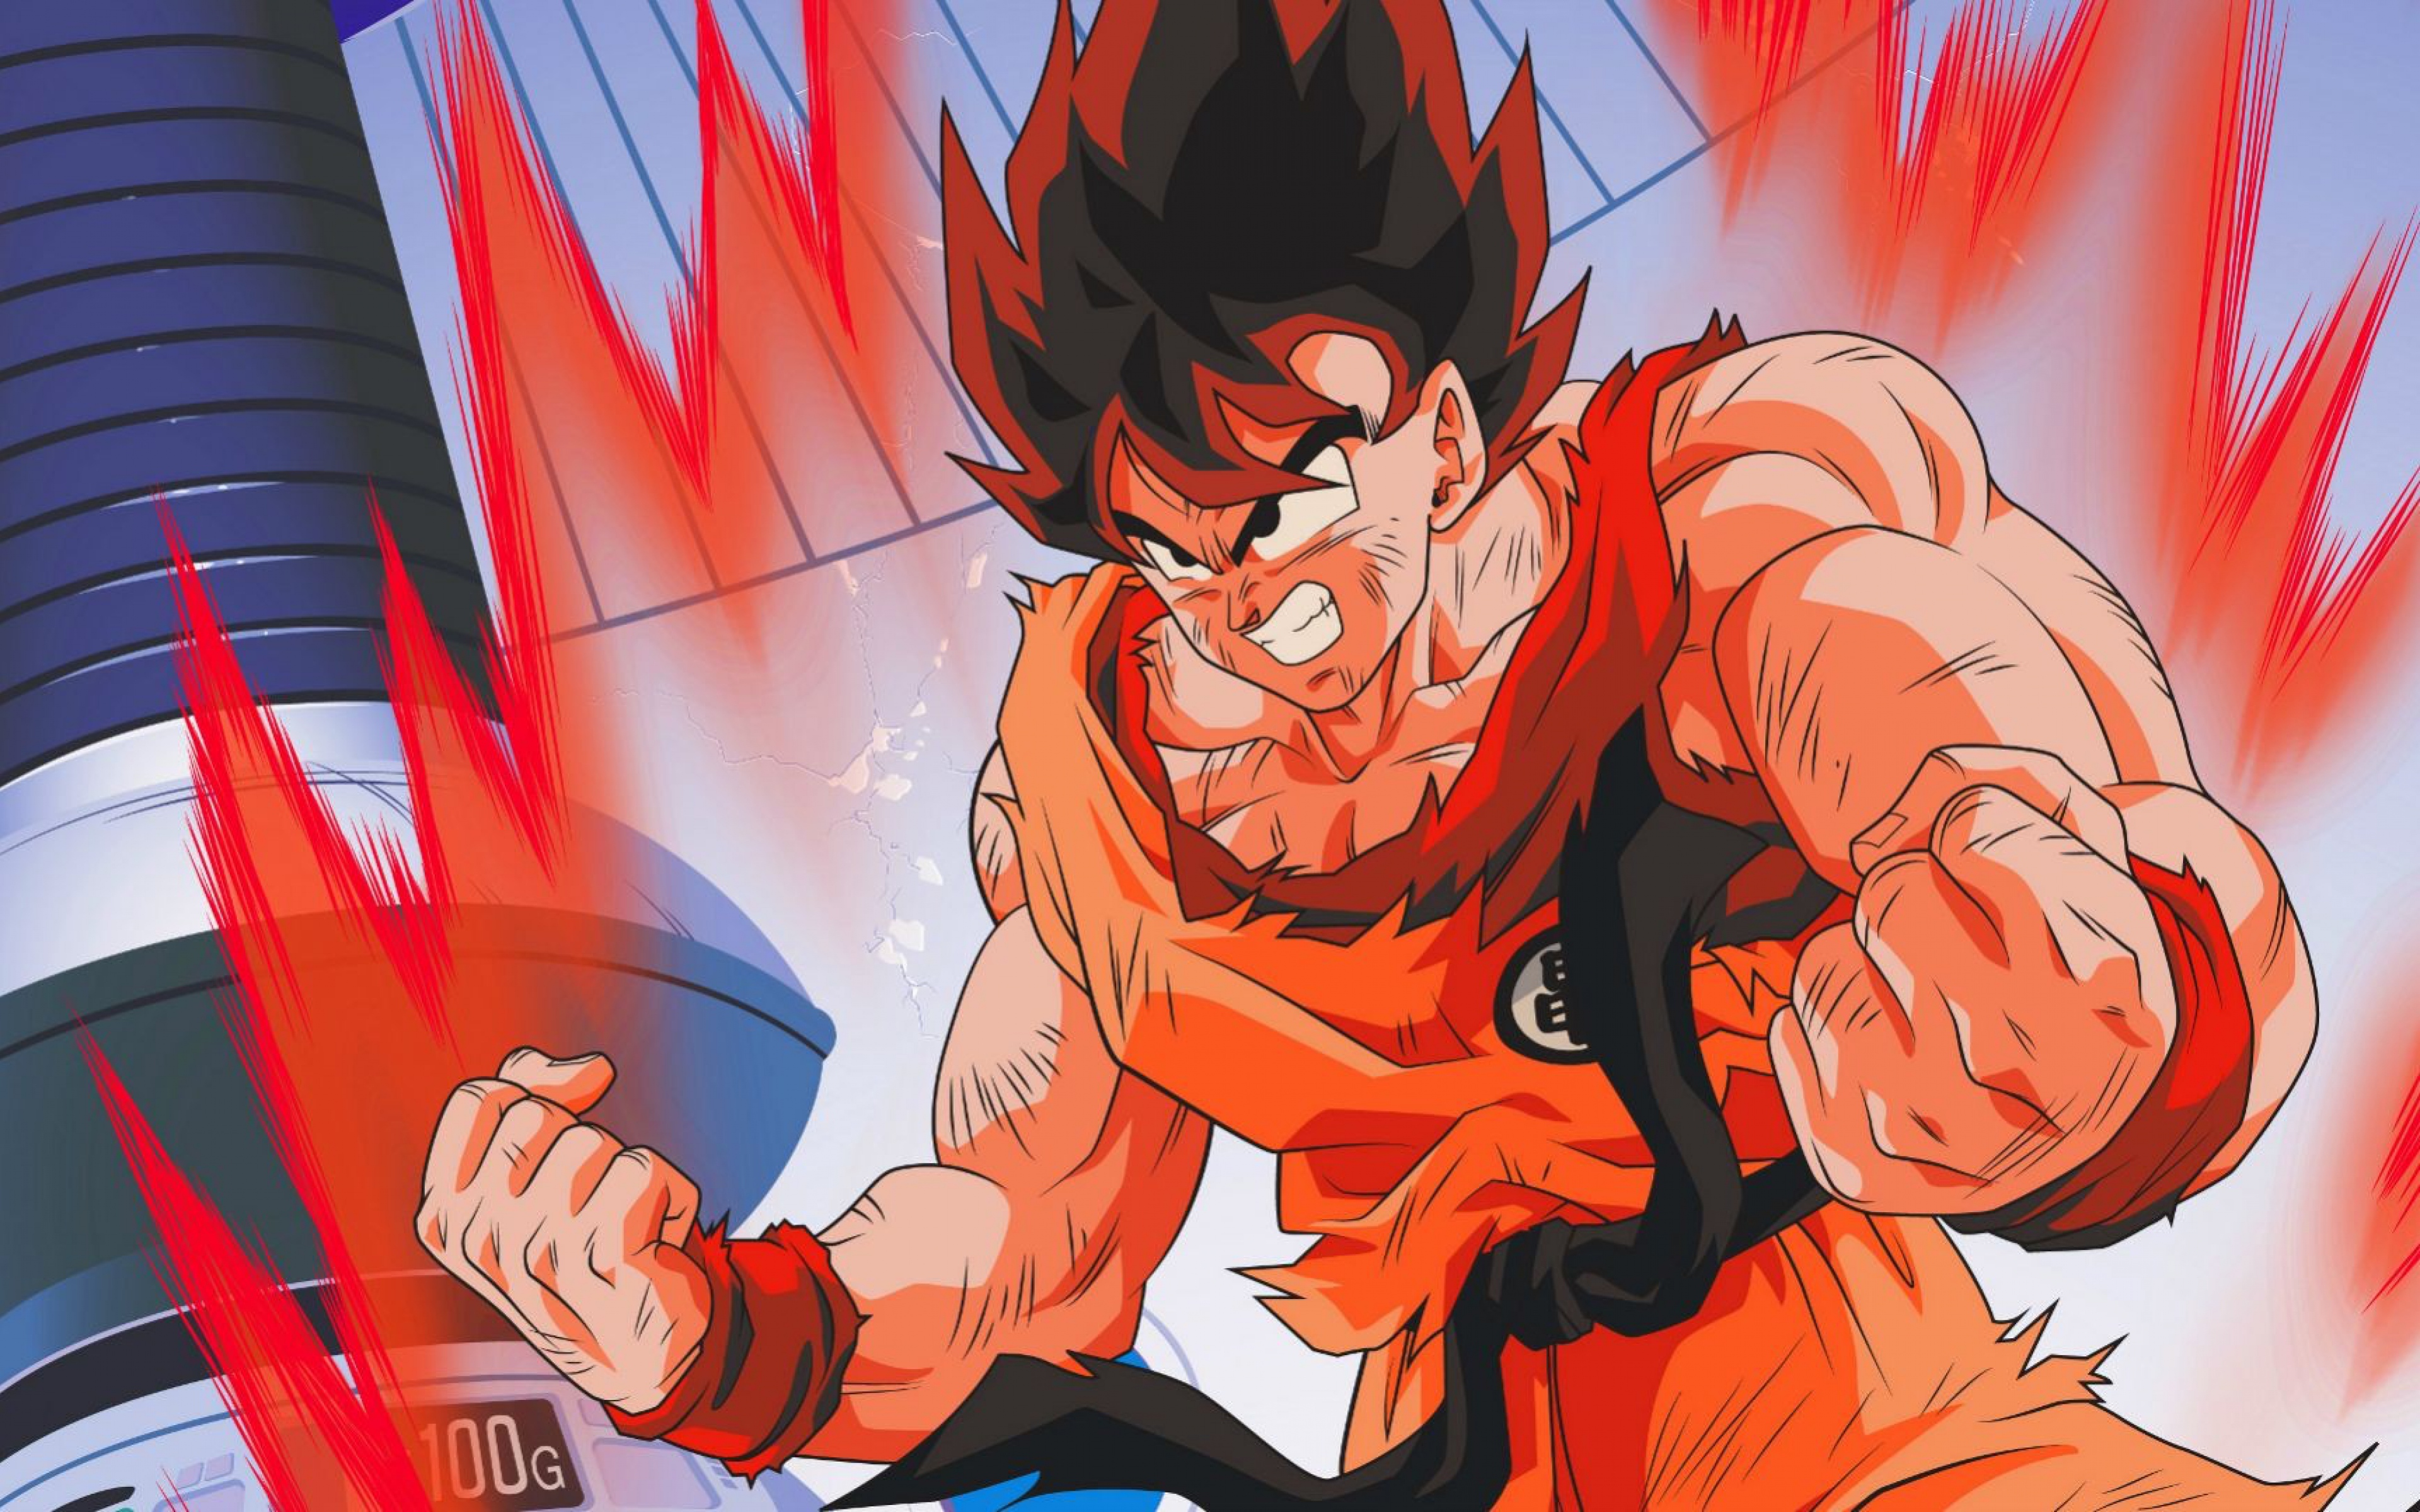 Goku Dragon Ball Z 4k, HD Anime, 4k Wallpapers, Images ...